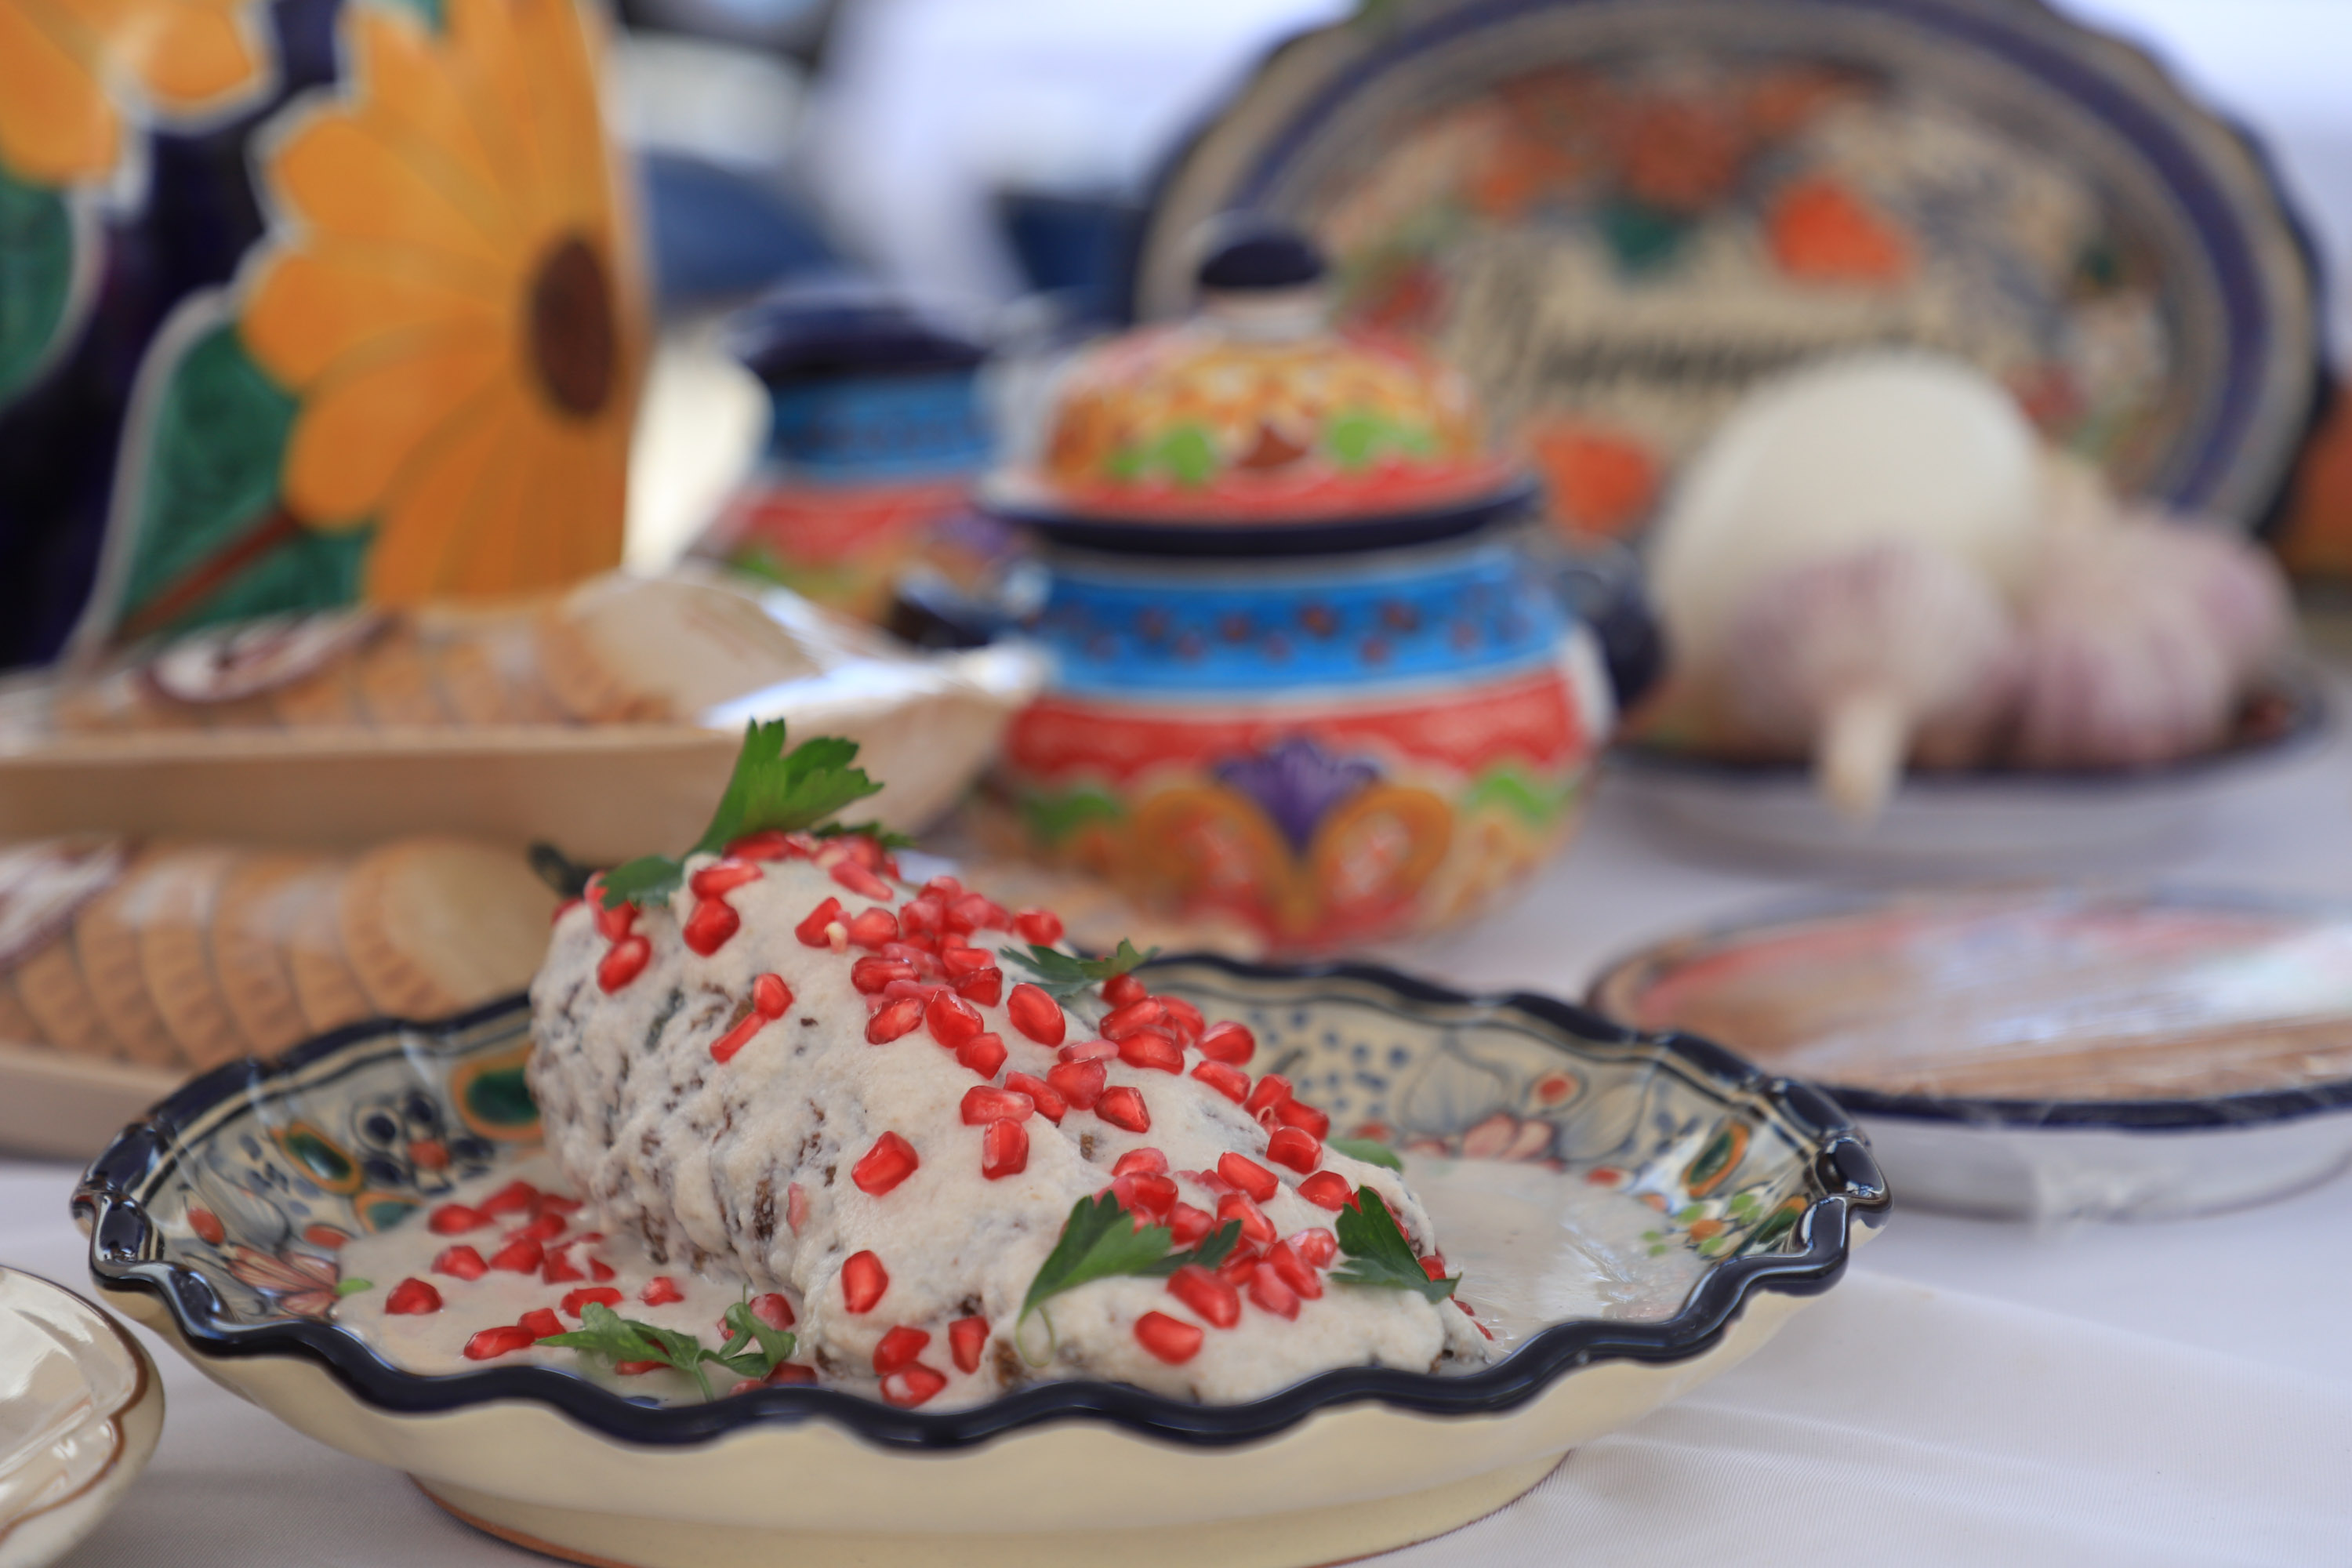 Temporada de chiles en nogada iniciará la segunda quincena de julio en Puebla